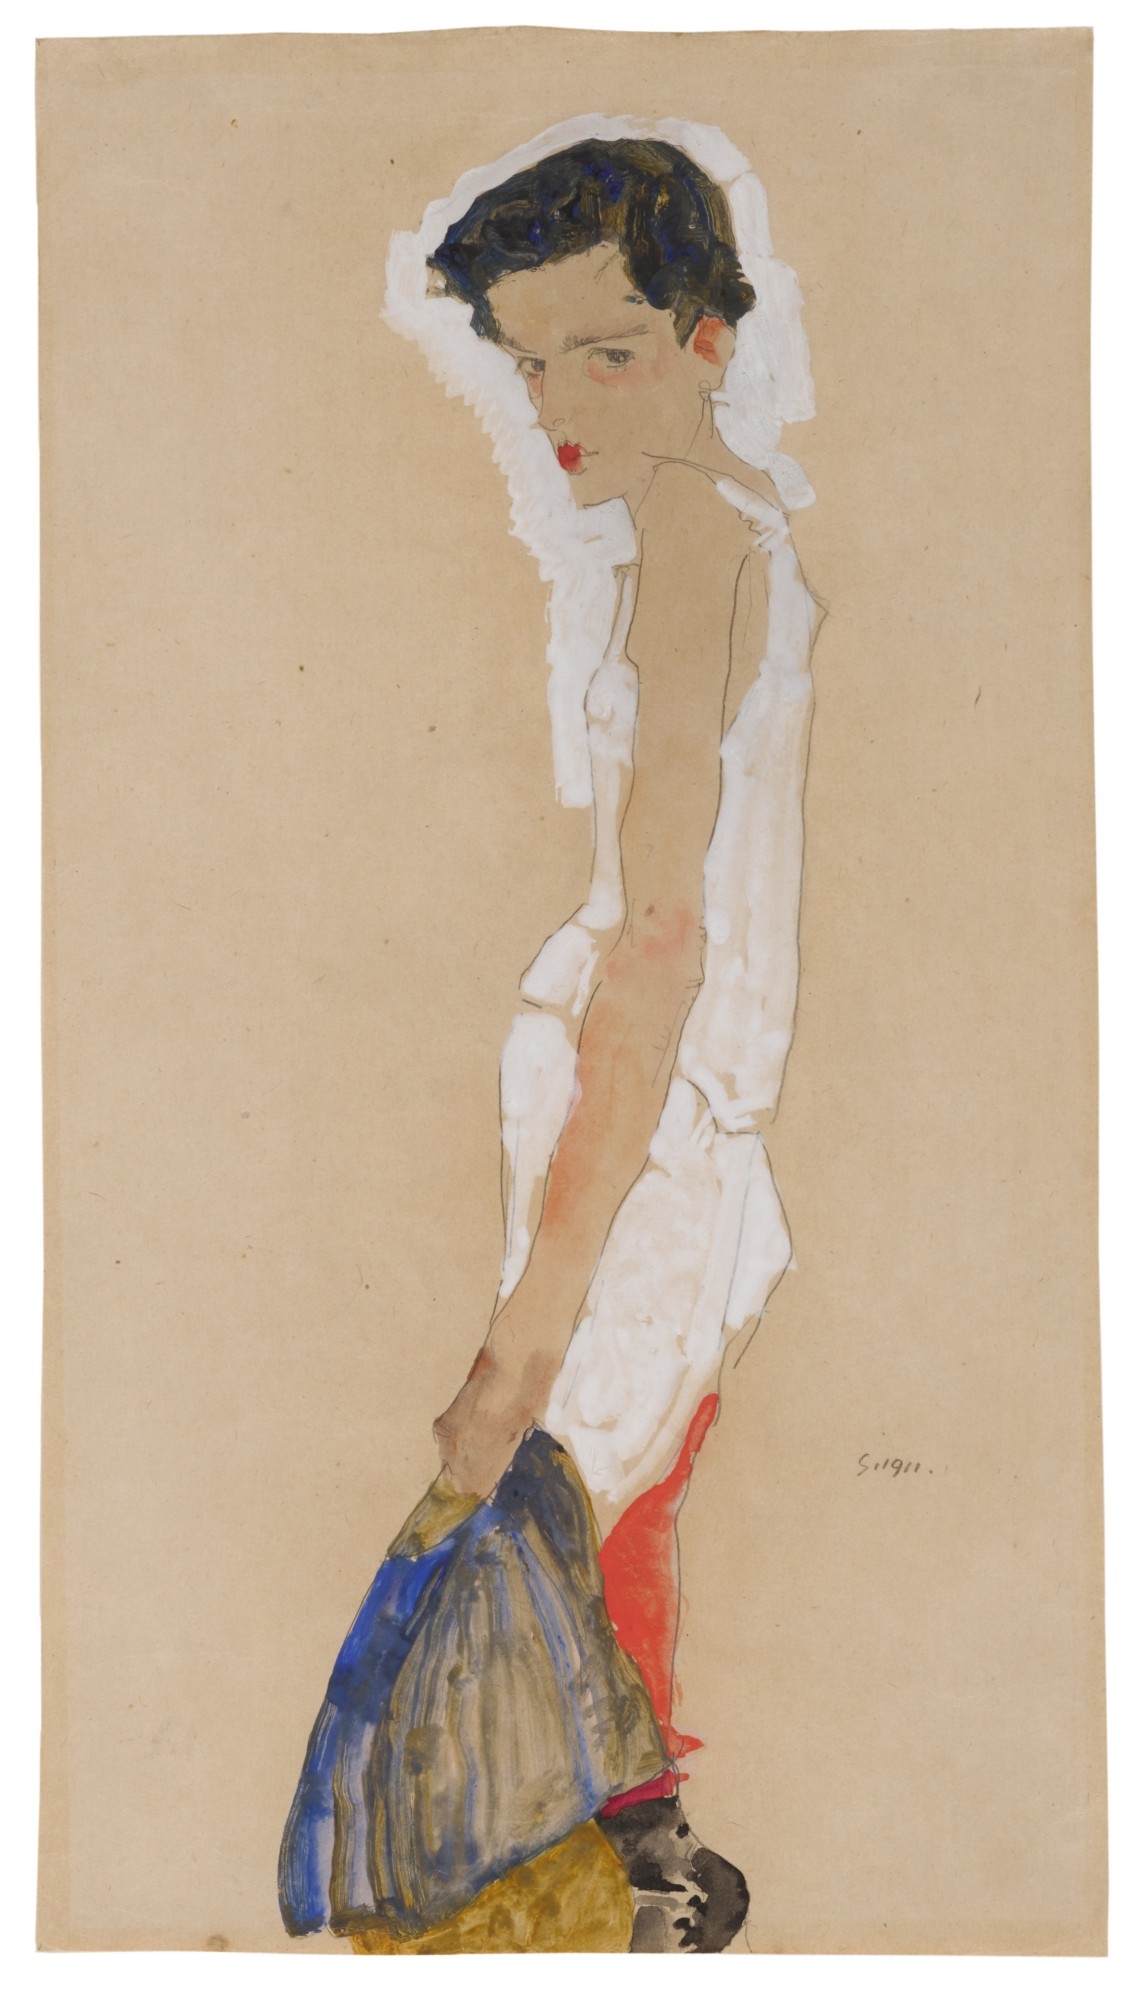 Sich entkleidendes Mädchen (Girl Undressing) by Egon Schiele, dated 1911